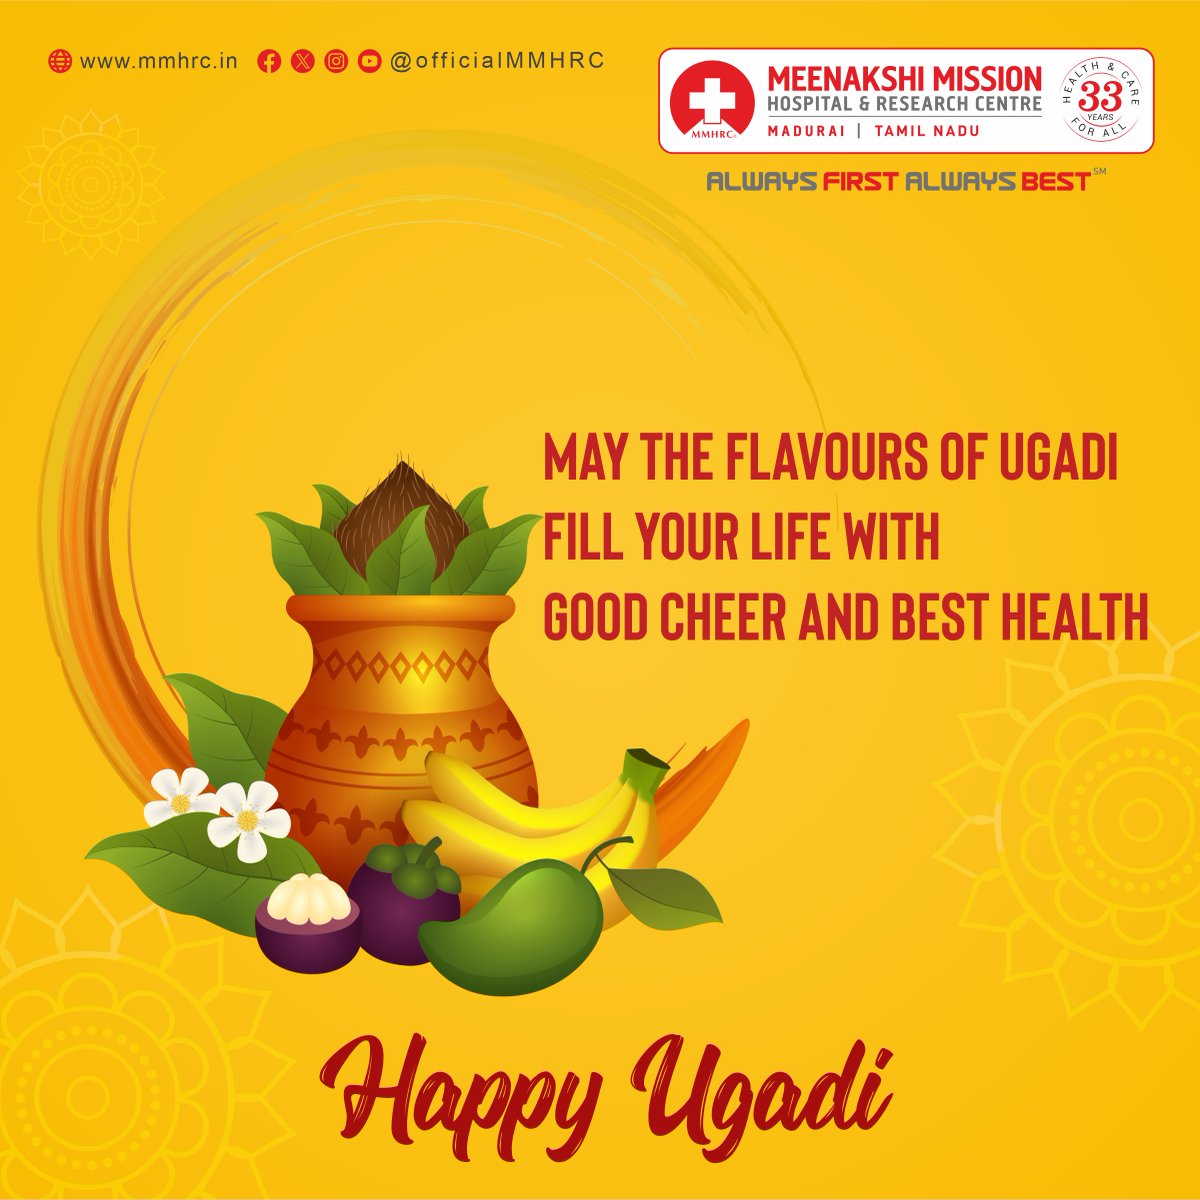 Ugadi wishes to everyone on behalf of Madurai Meenakshi Mission Hospital! 

#HappyUgadi #UgadiWishes #UgadiCelebration #NewYearGreetings #MeenakshiMissionHospital #Madurai #FestiveGreetings #JoyfulUgadi #Ugadi2024
#UgadiFestival #MeenakshiMissionGreetings